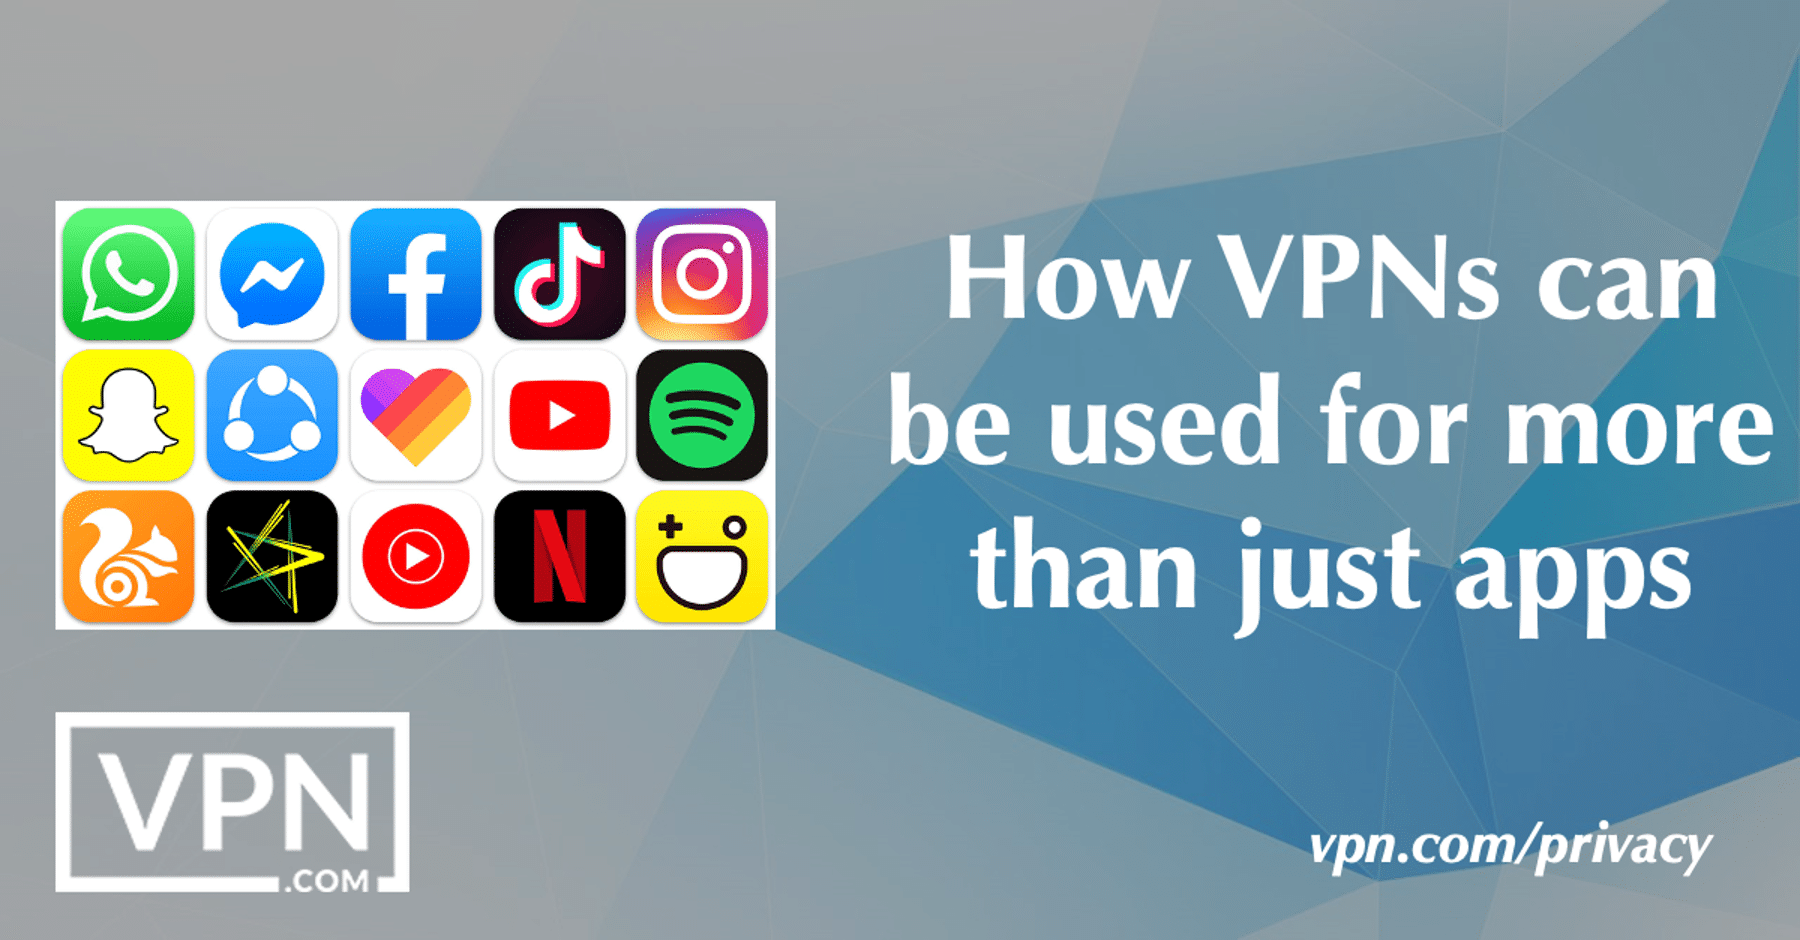 Kaip VPN galima naudoti ne tik programėlėms